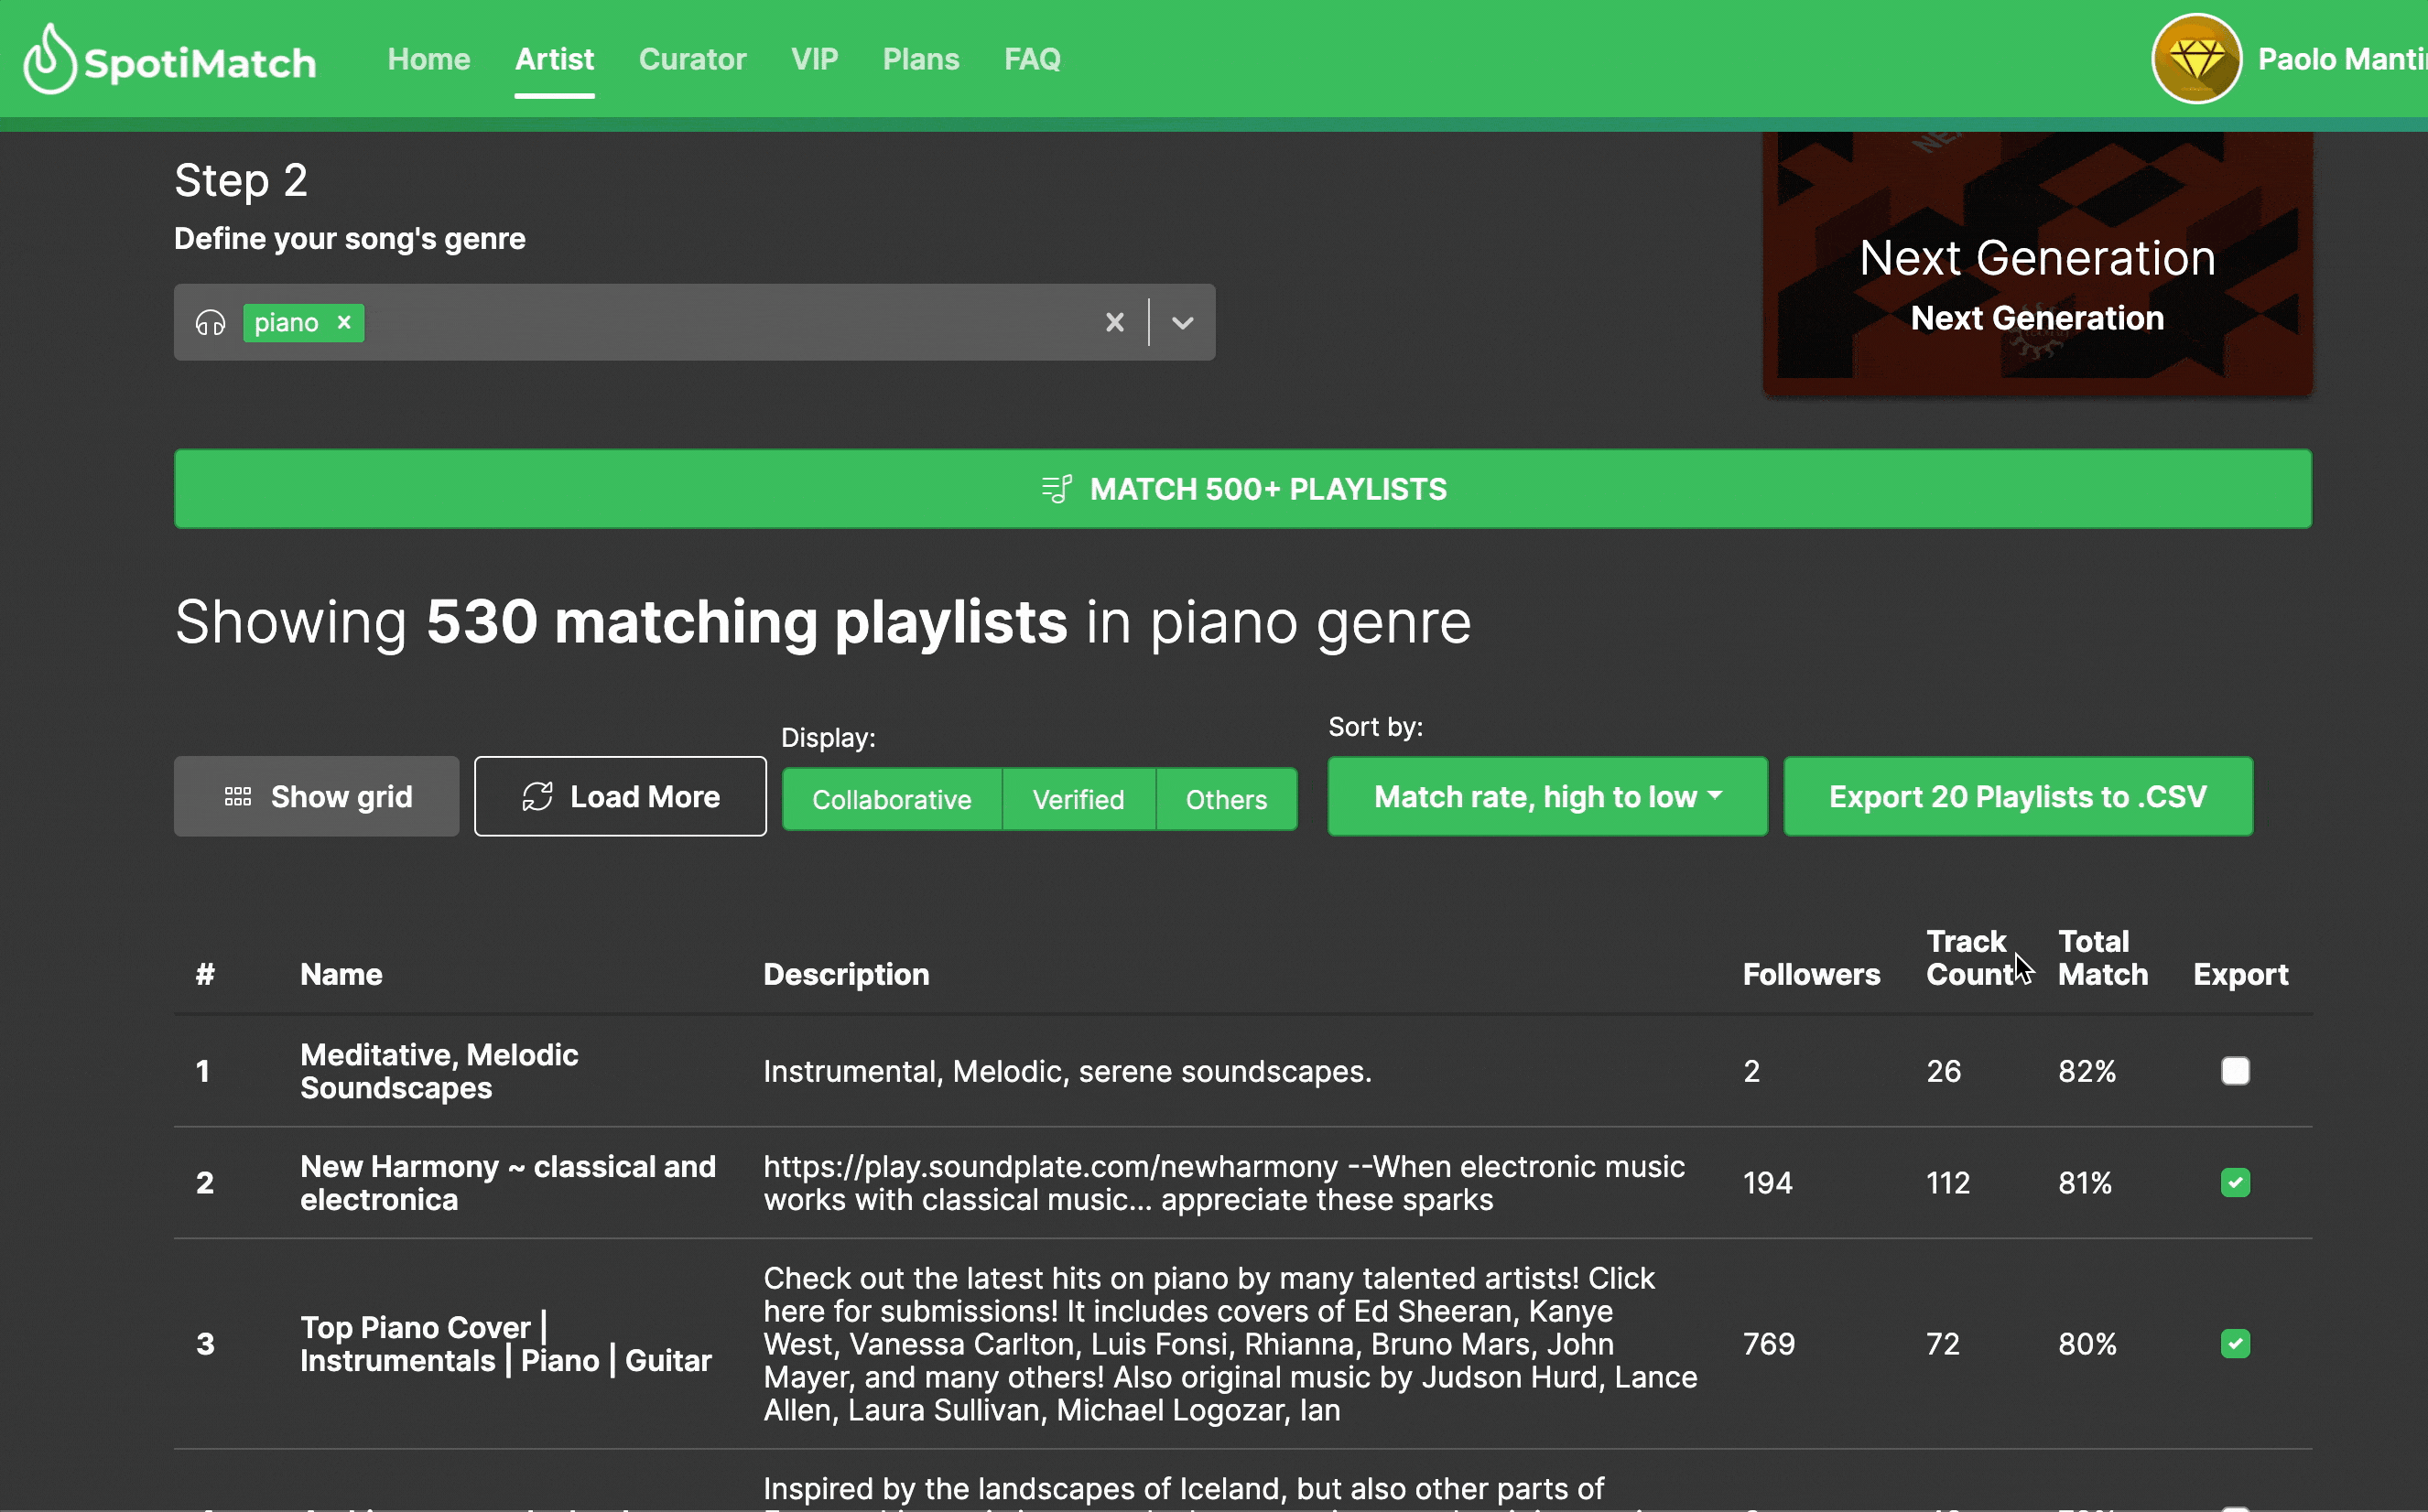 Come esportare milioni di contatti delle playlists su spotimatch.com?